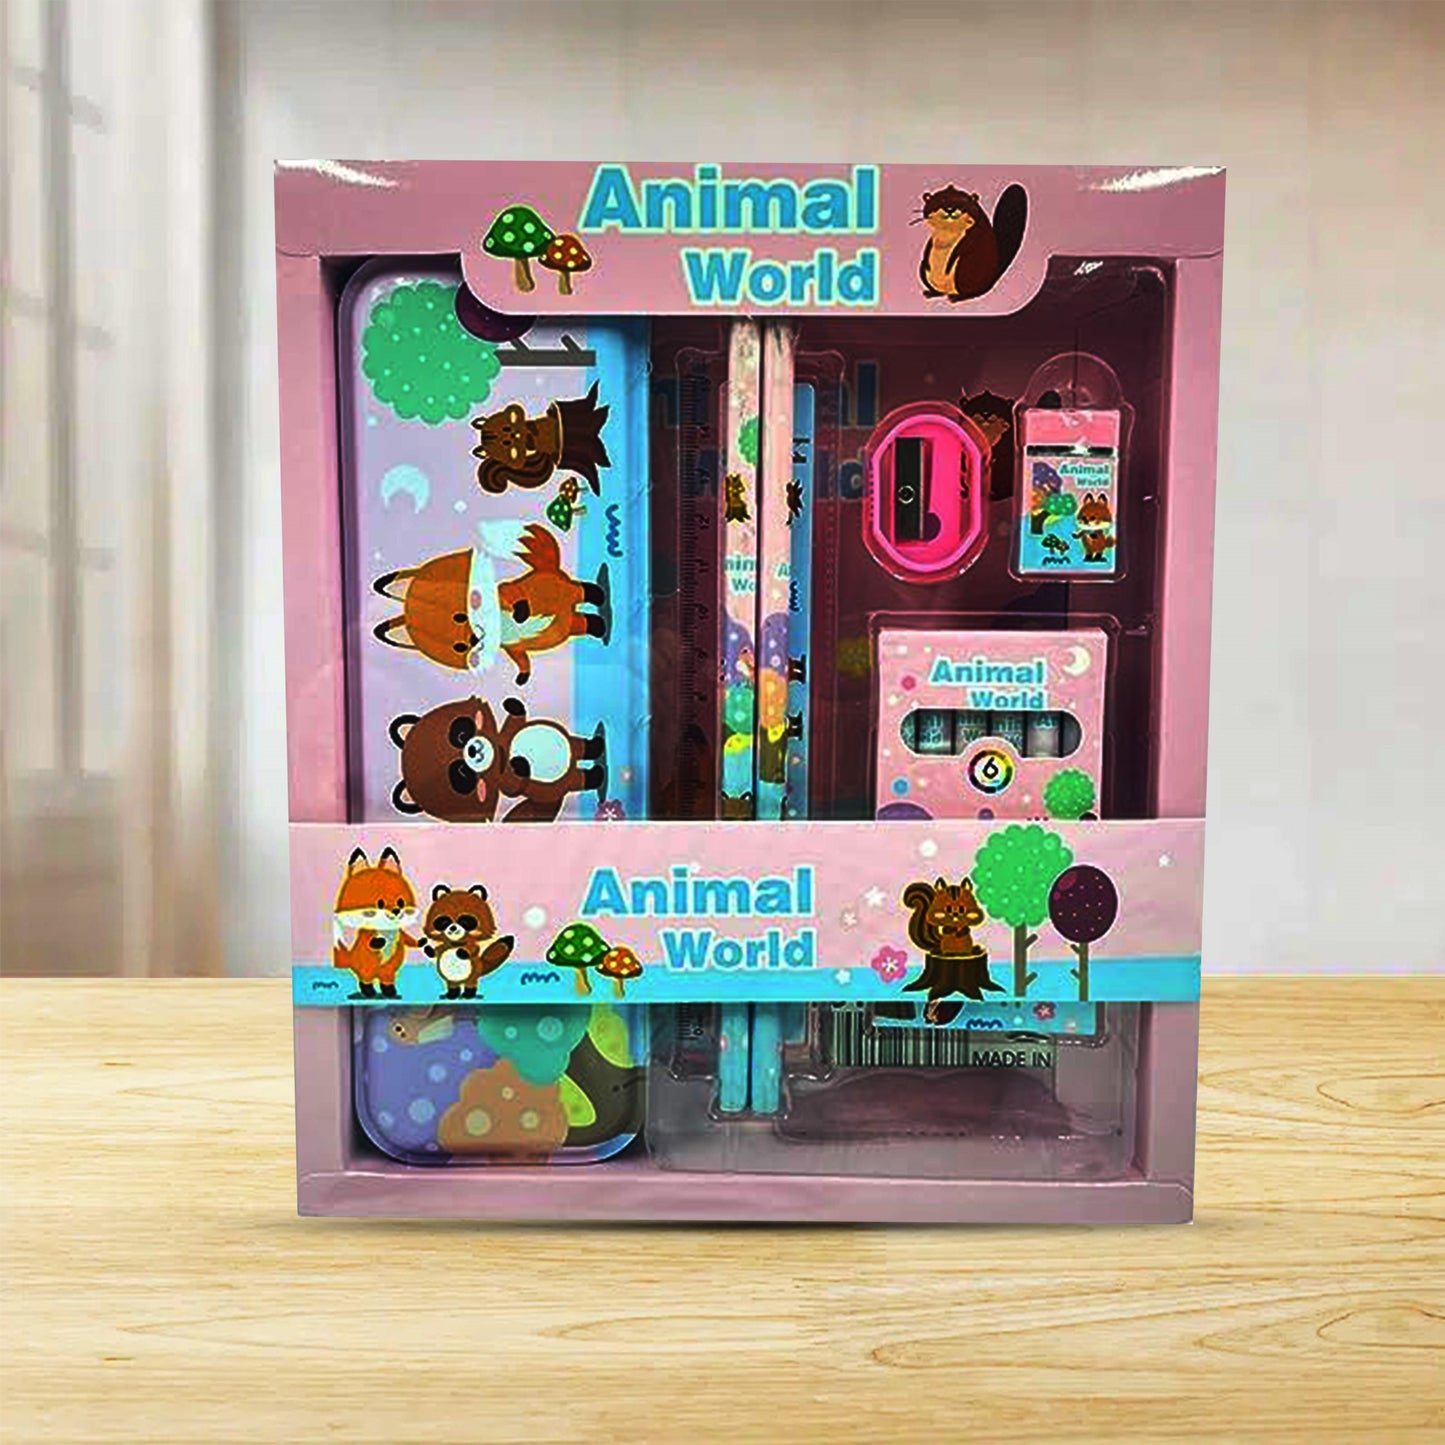 Animal World Theme Stationary Set Kit